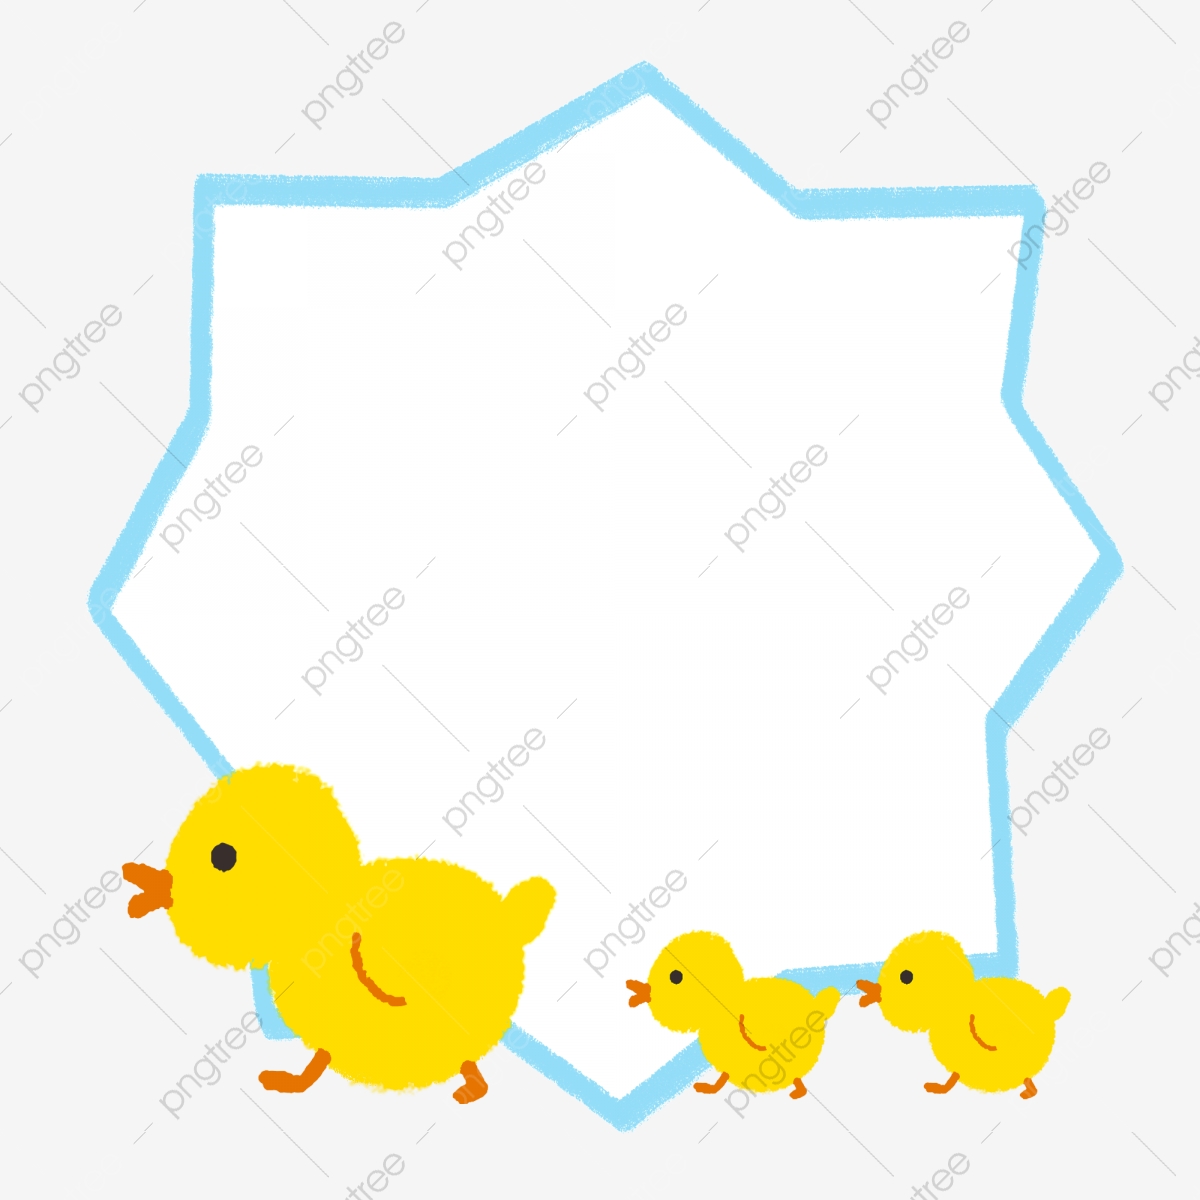 duckling clipart border